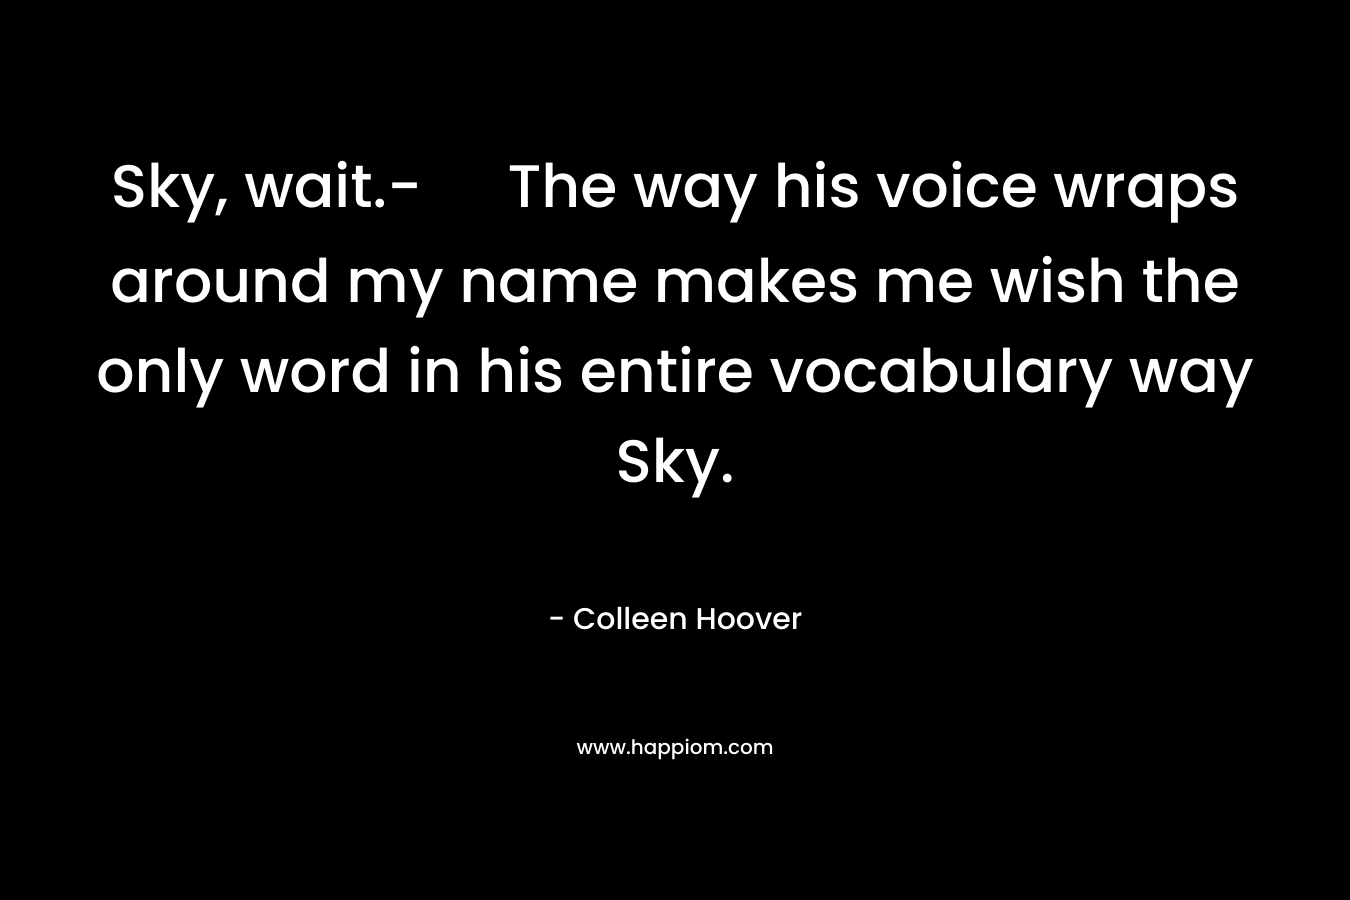 Sky, wait.- The way his voice wraps around my name makes me wish the only word in his entire vocabulary way Sky.